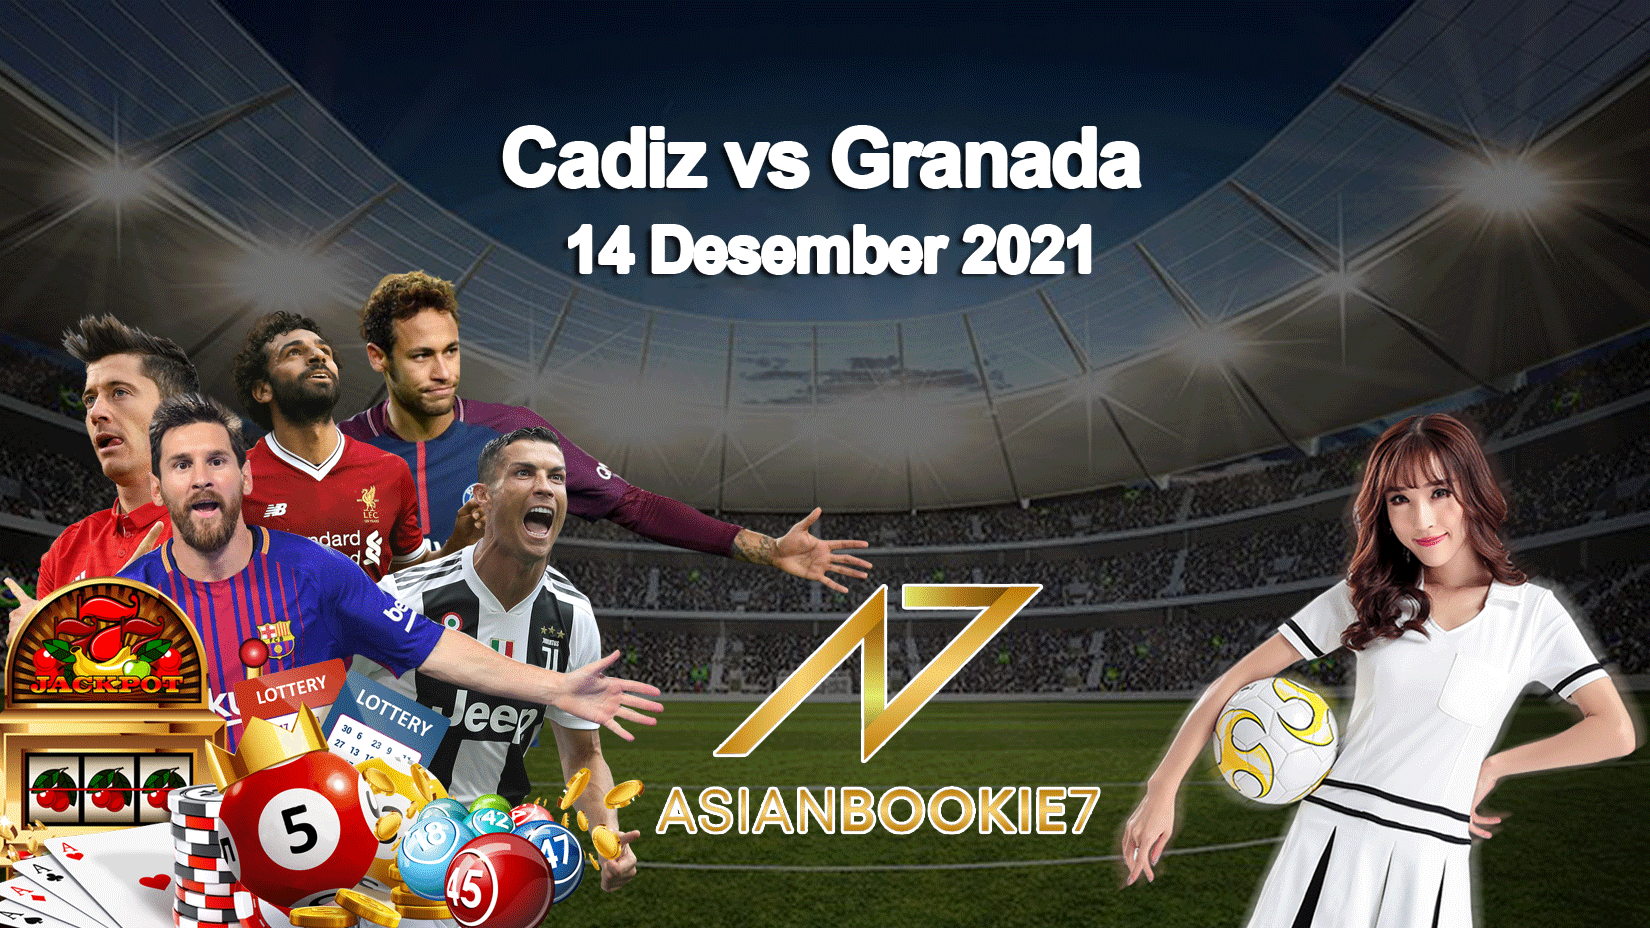 Prediksi Cadiz vs Granada 14 Desember 2021